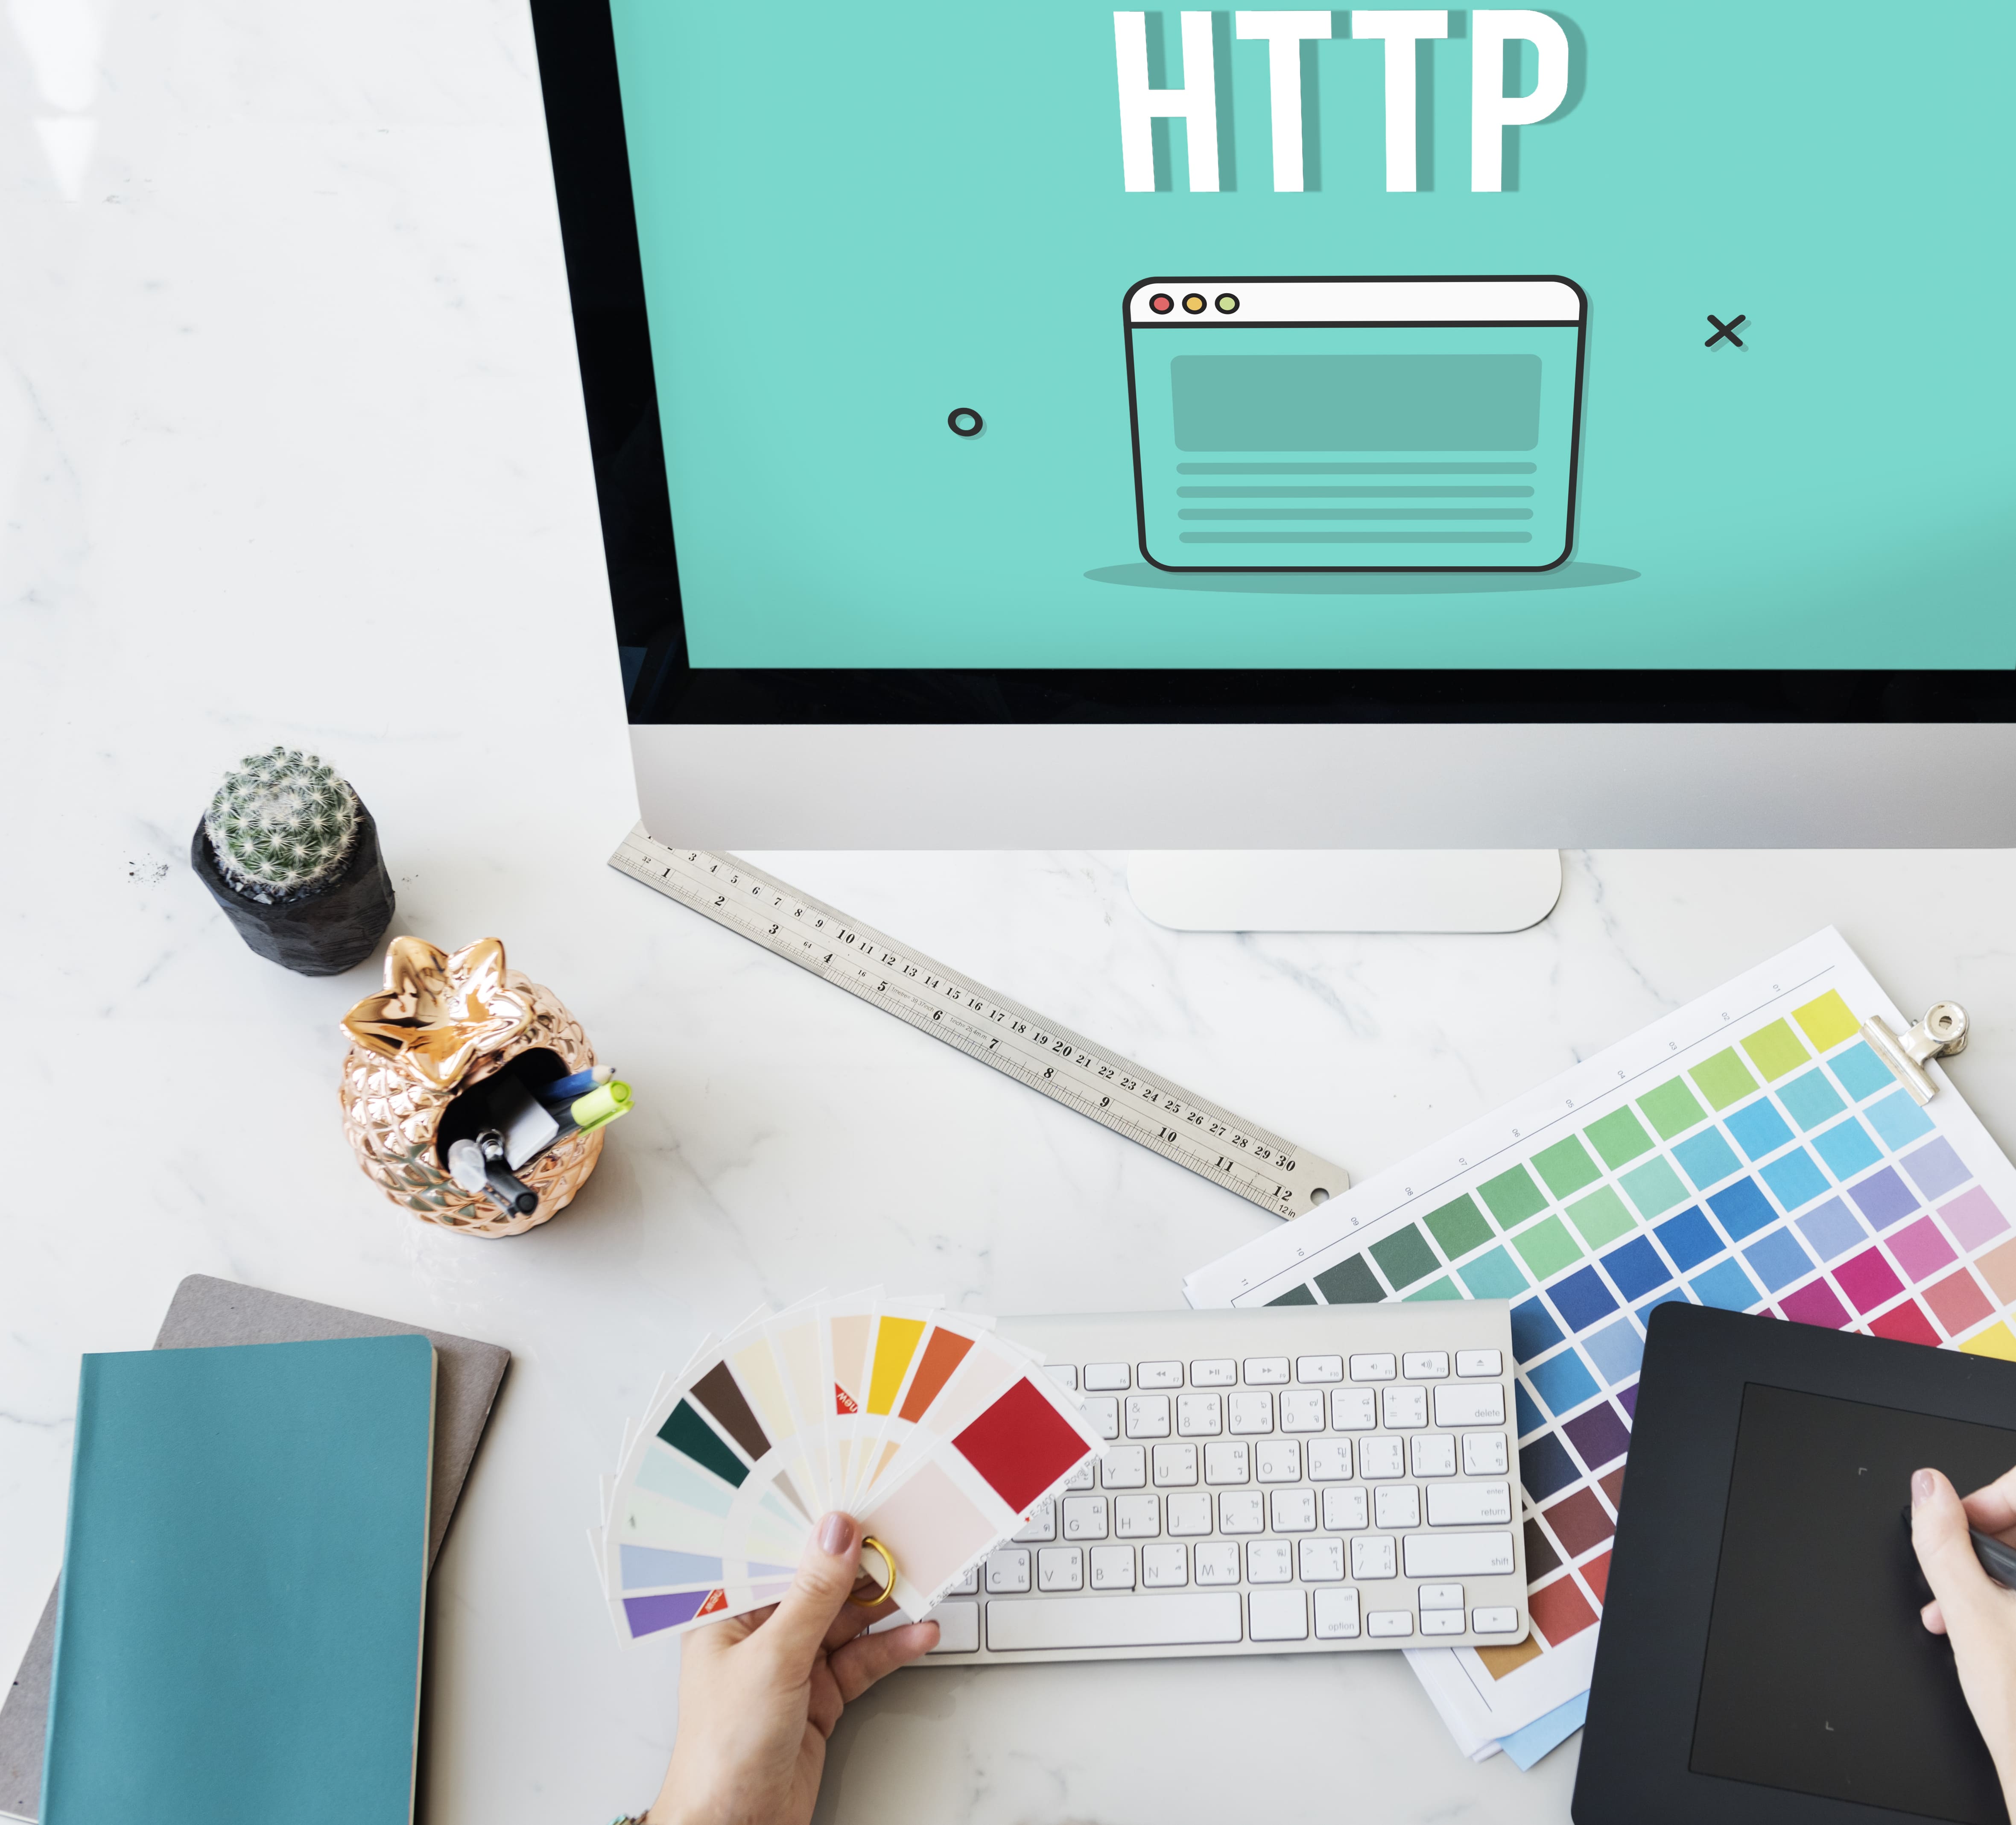 Imagem de um computador e algumas opções de cores para remeter ao empreendedor que deseja montar um serviço de criação de website